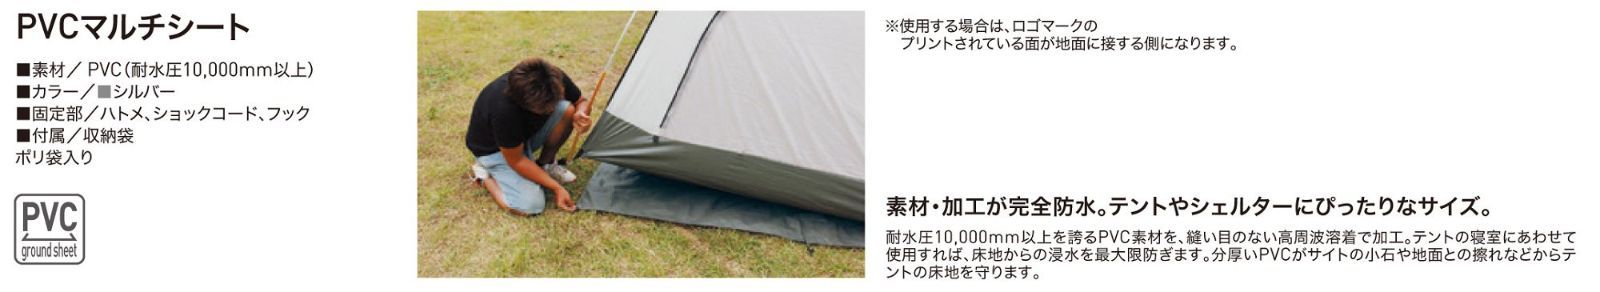 【在庫処分】ogawa(オガワ) テント用 PVCマルチシート(スクートDX6用 280cm×280cm用) 1406